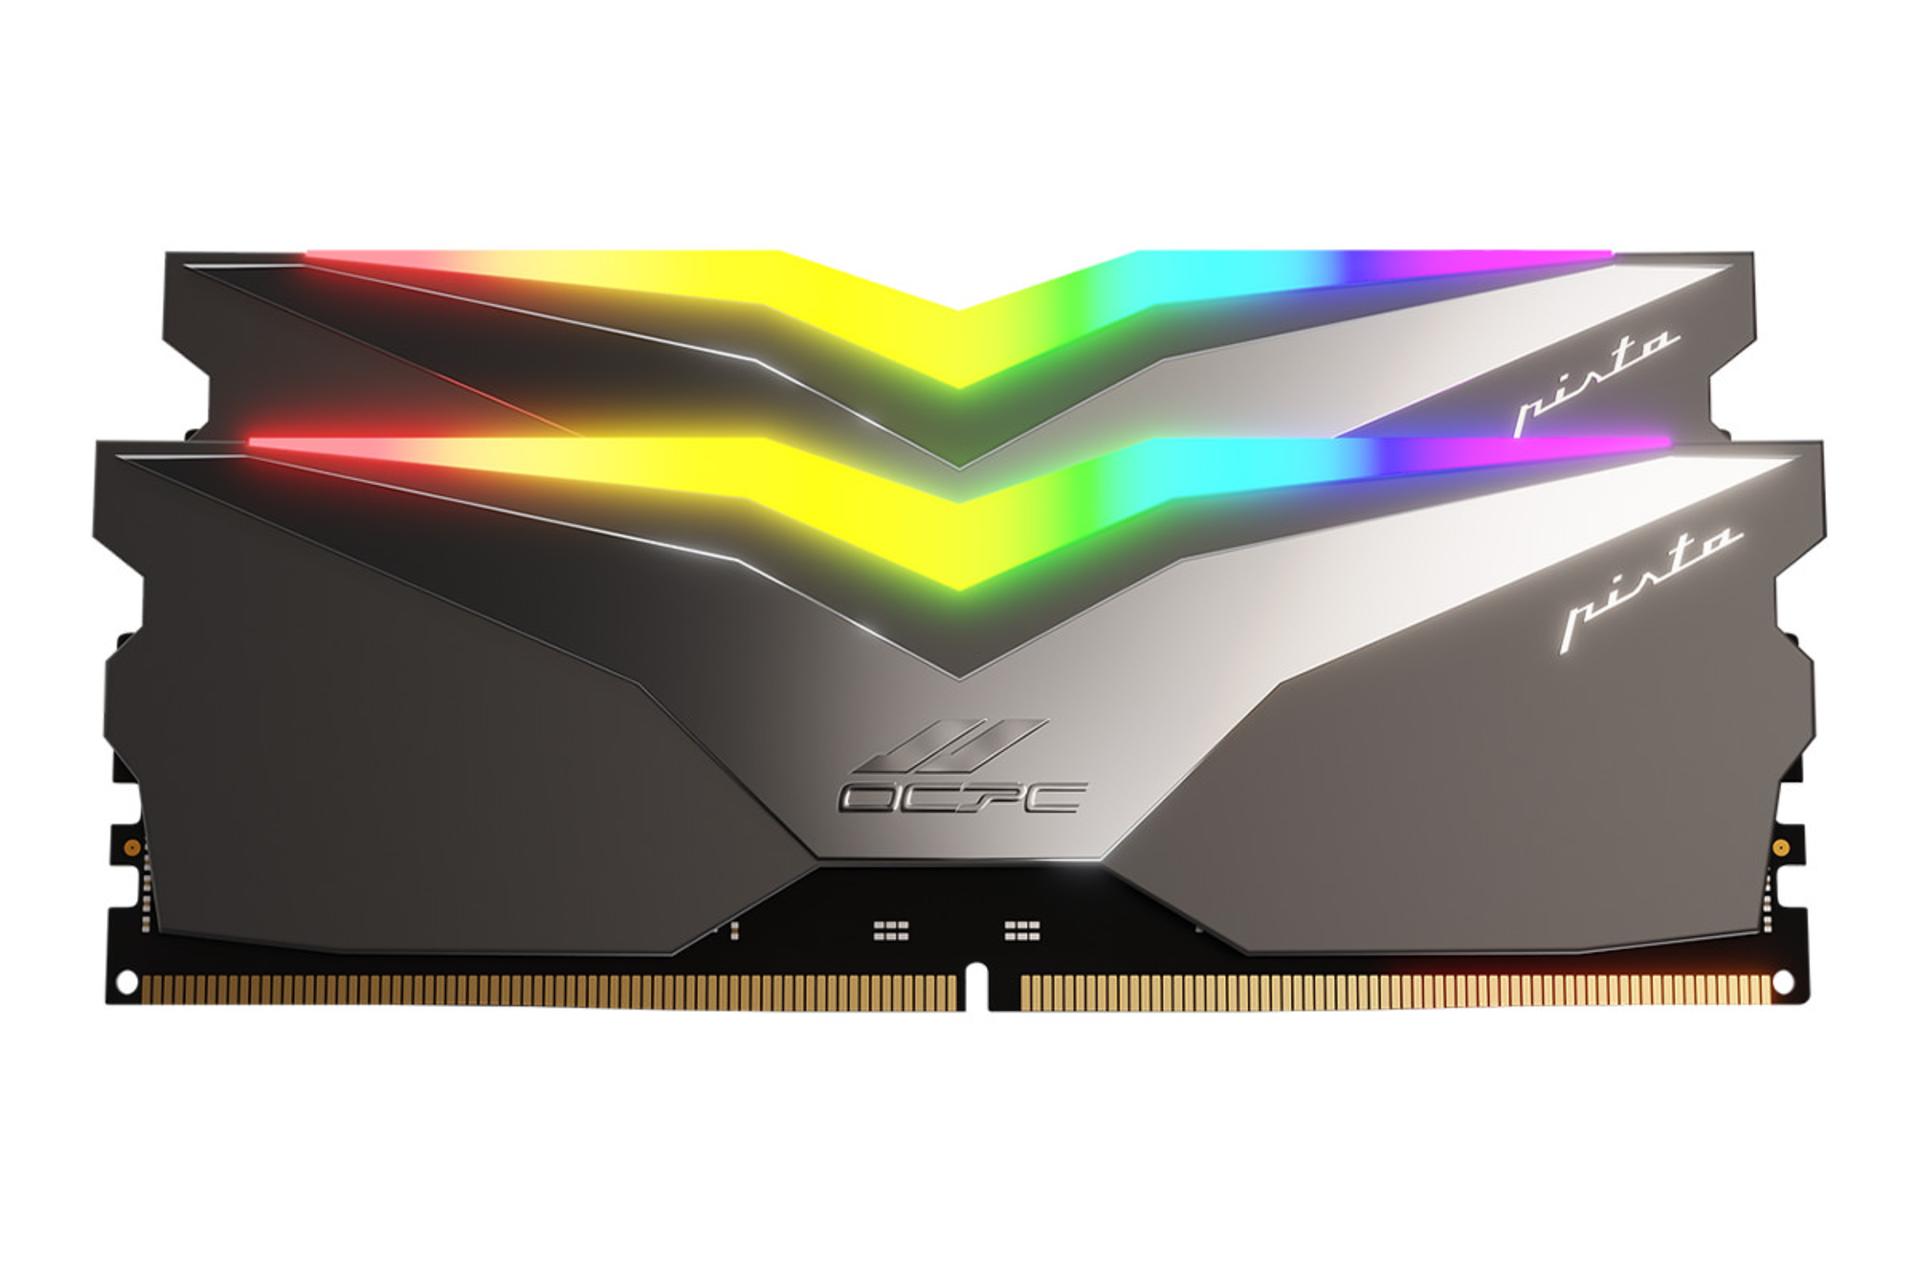 حافظه رم او سی پی سی PISTA RGB ظرفیت 32 گیگابایت (2x16) از نوع DDR5-4800